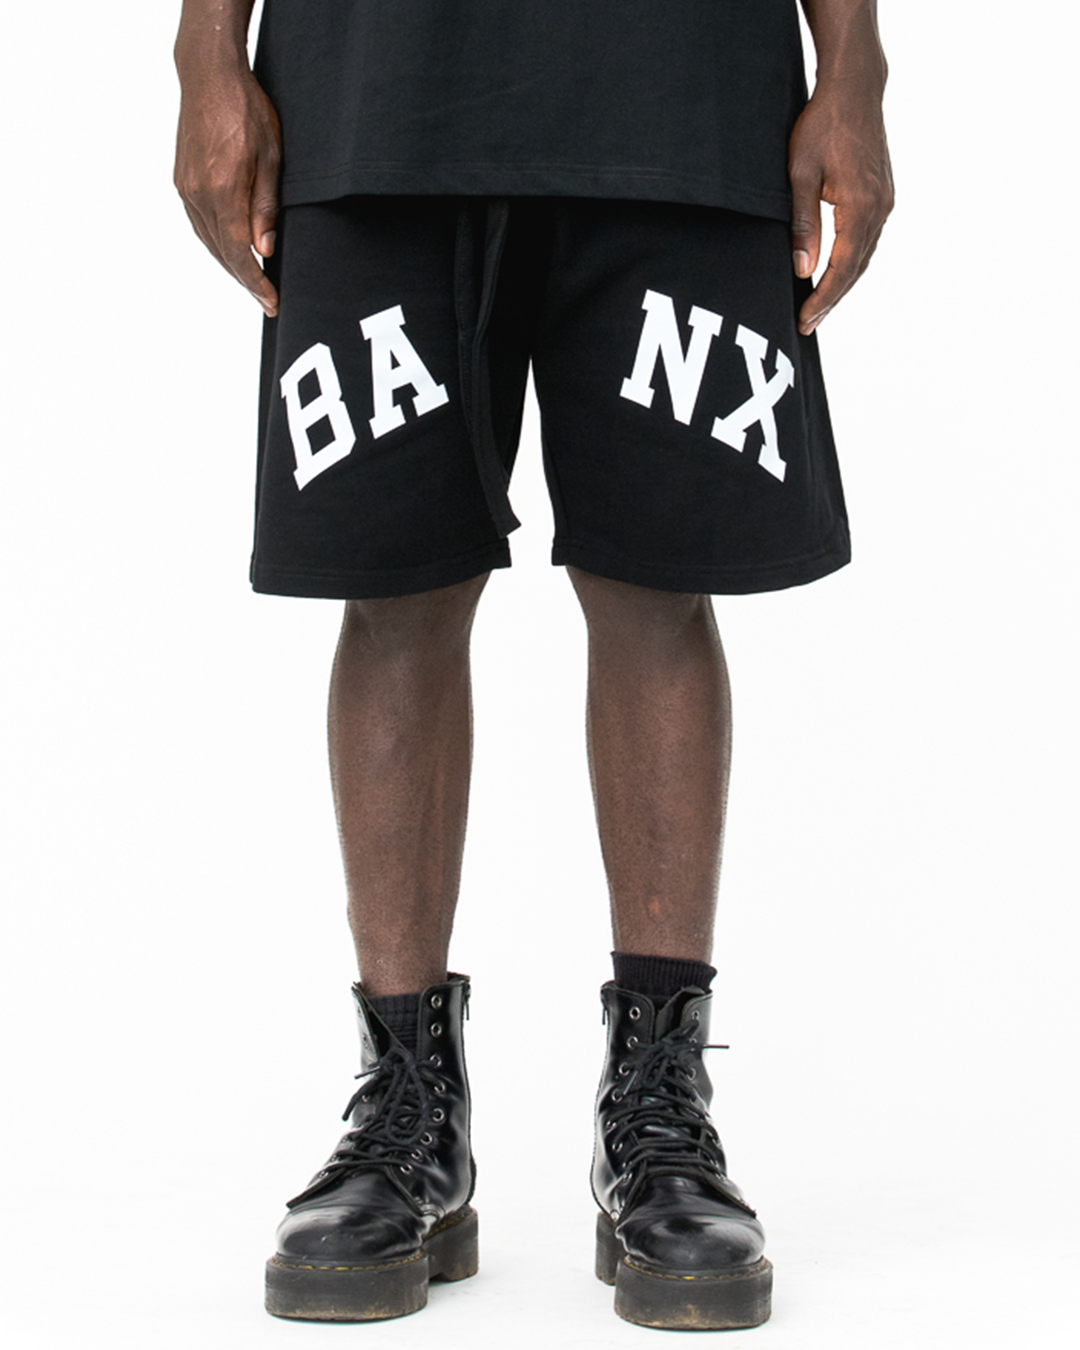 BANX Dropout Shorts Black